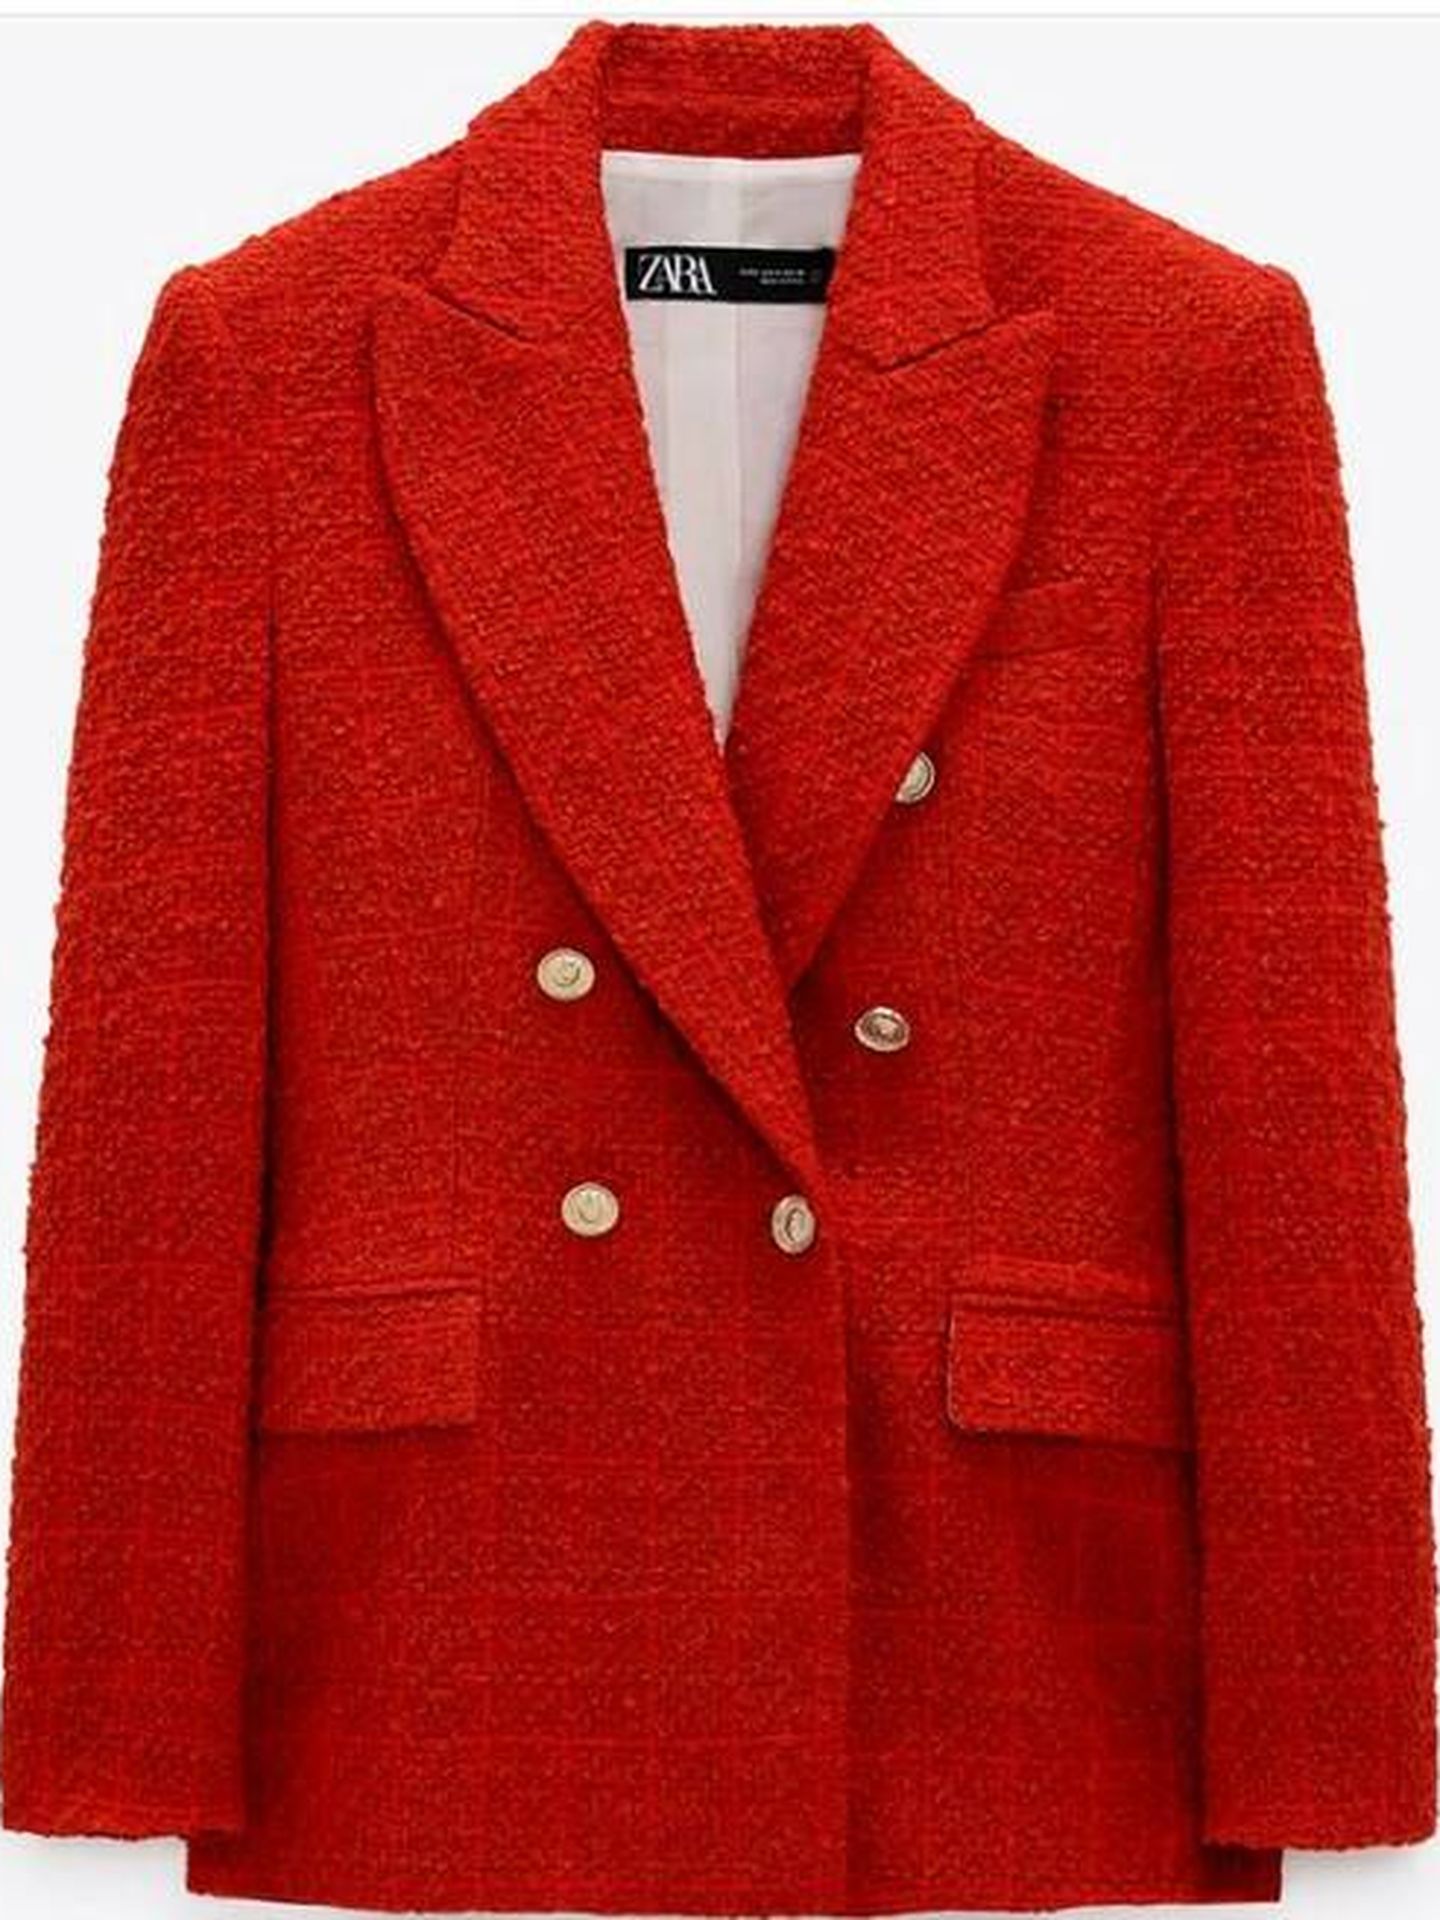 revolución de la blazer roja (rebajada Zara) de Kate Middleton